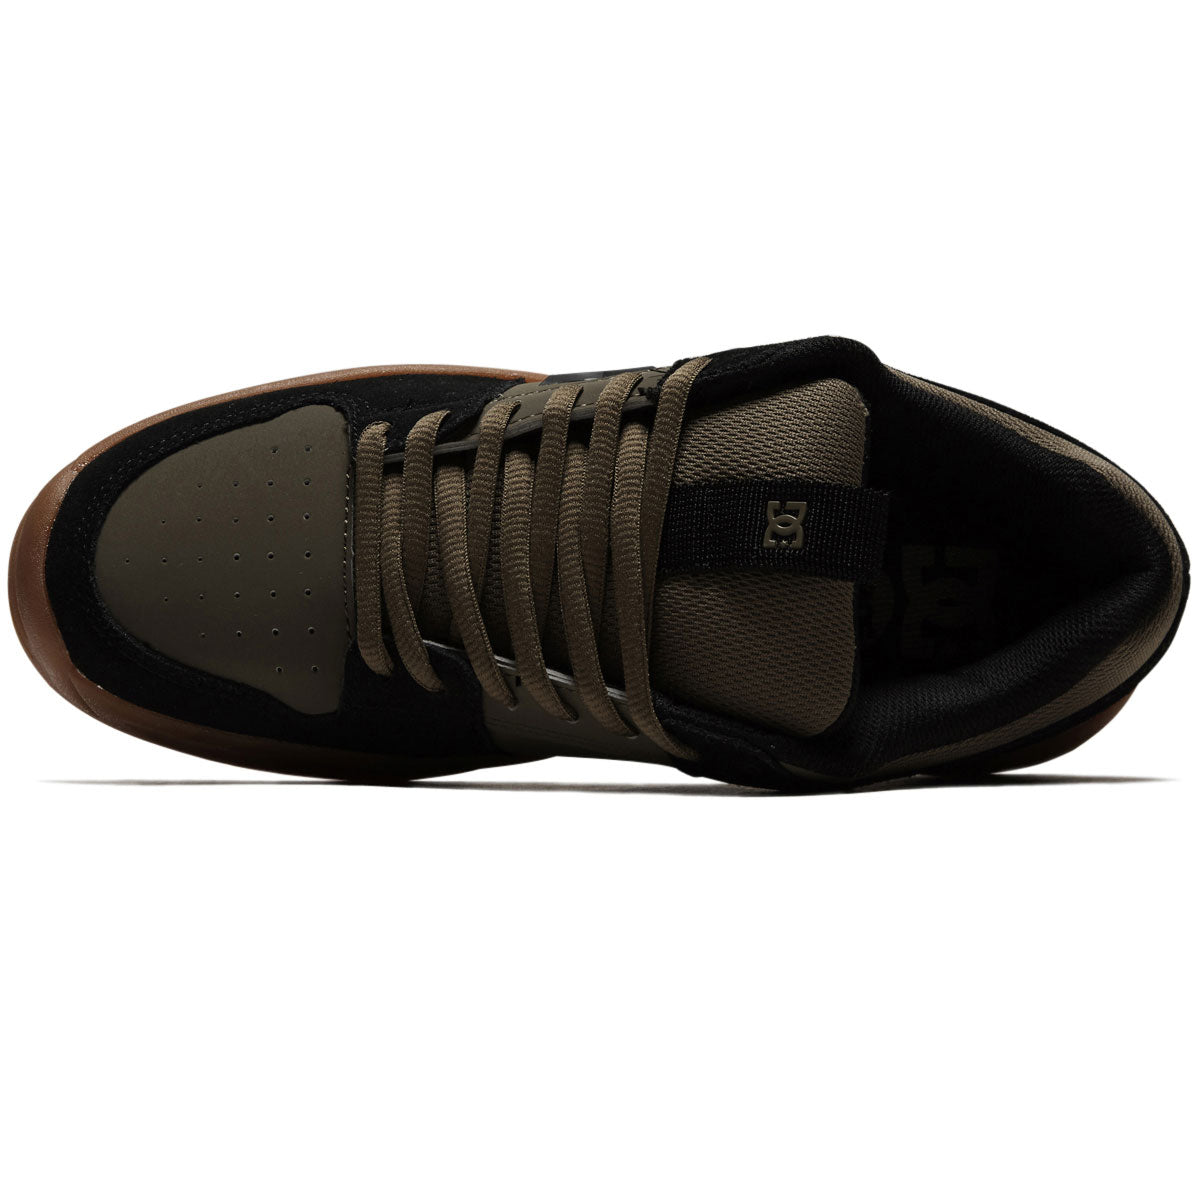 DC Lynx Zero Shoes - Olive/Black image 3